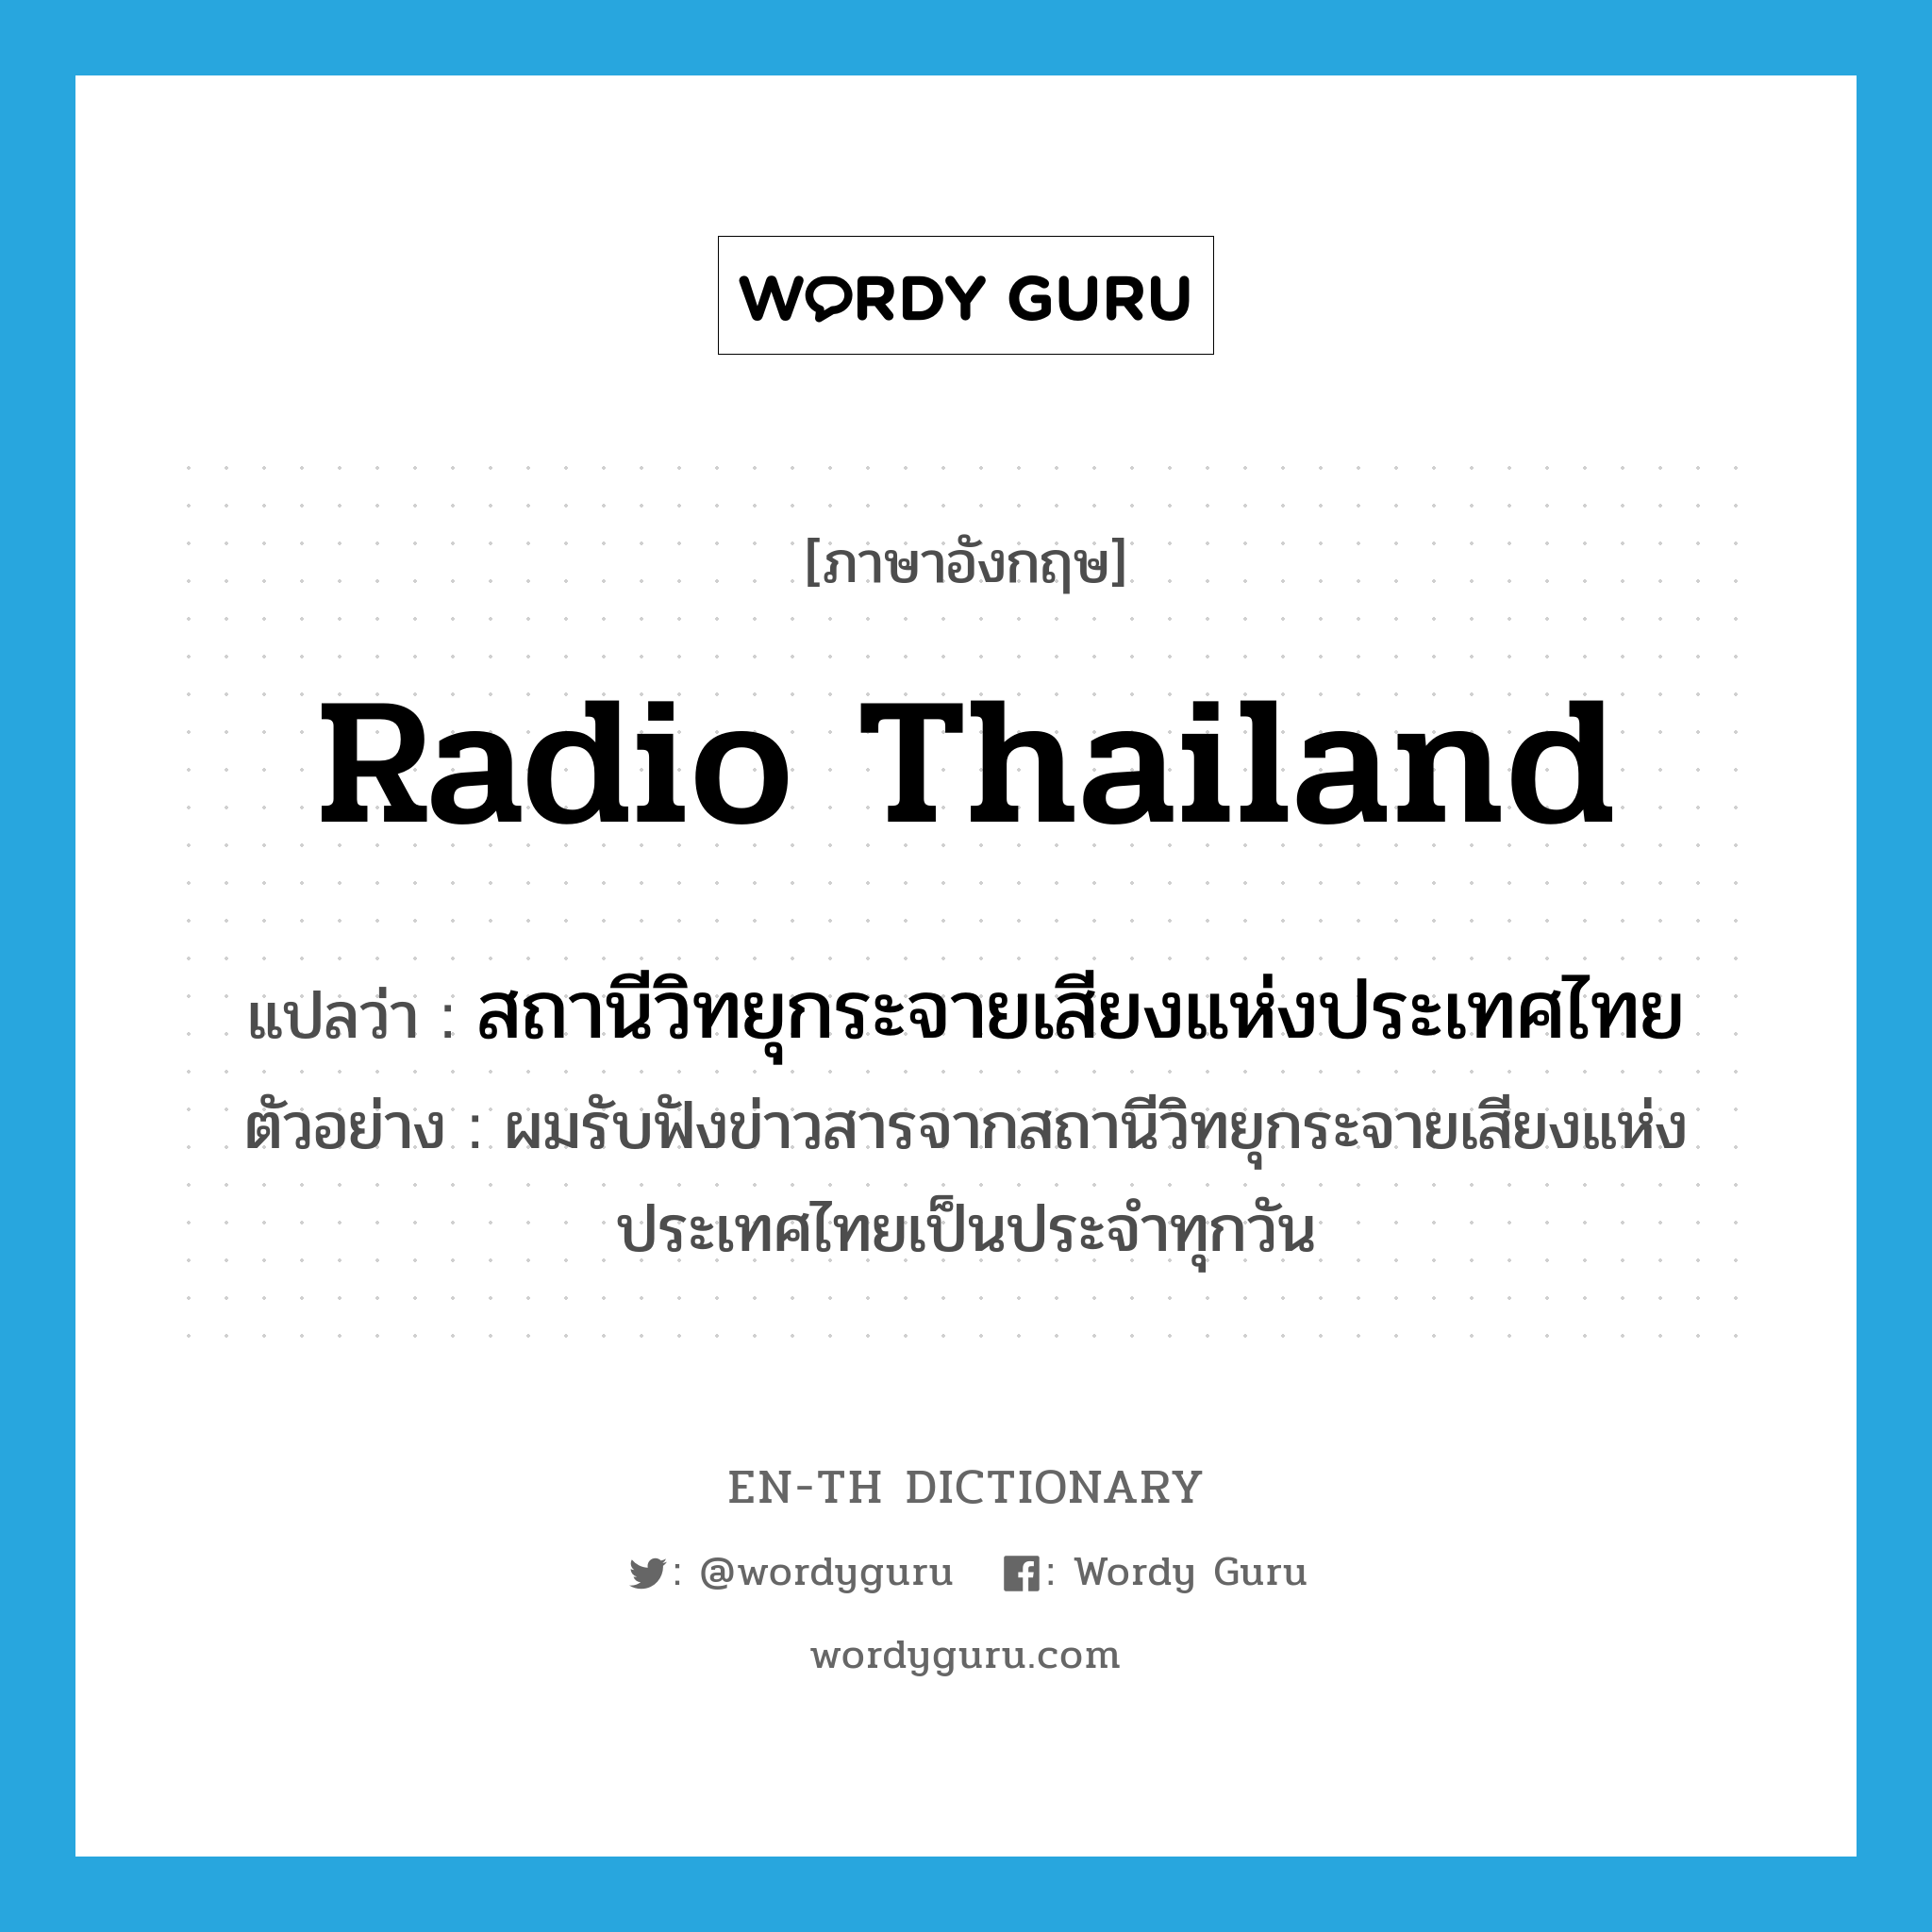 Radio Thailand แปลว่า?, คำศัพท์ภาษาอังกฤษ Radio Thailand แปลว่า สถานีวิทยุกระจายเสียงแห่งประเทศไทย ประเภท N ตัวอย่าง ผมรับฟังข่าวสารจากสถานีวิทยุกระจายเสียงแห่งประเทศไทยเป็นประจำทุกวัน หมวด N